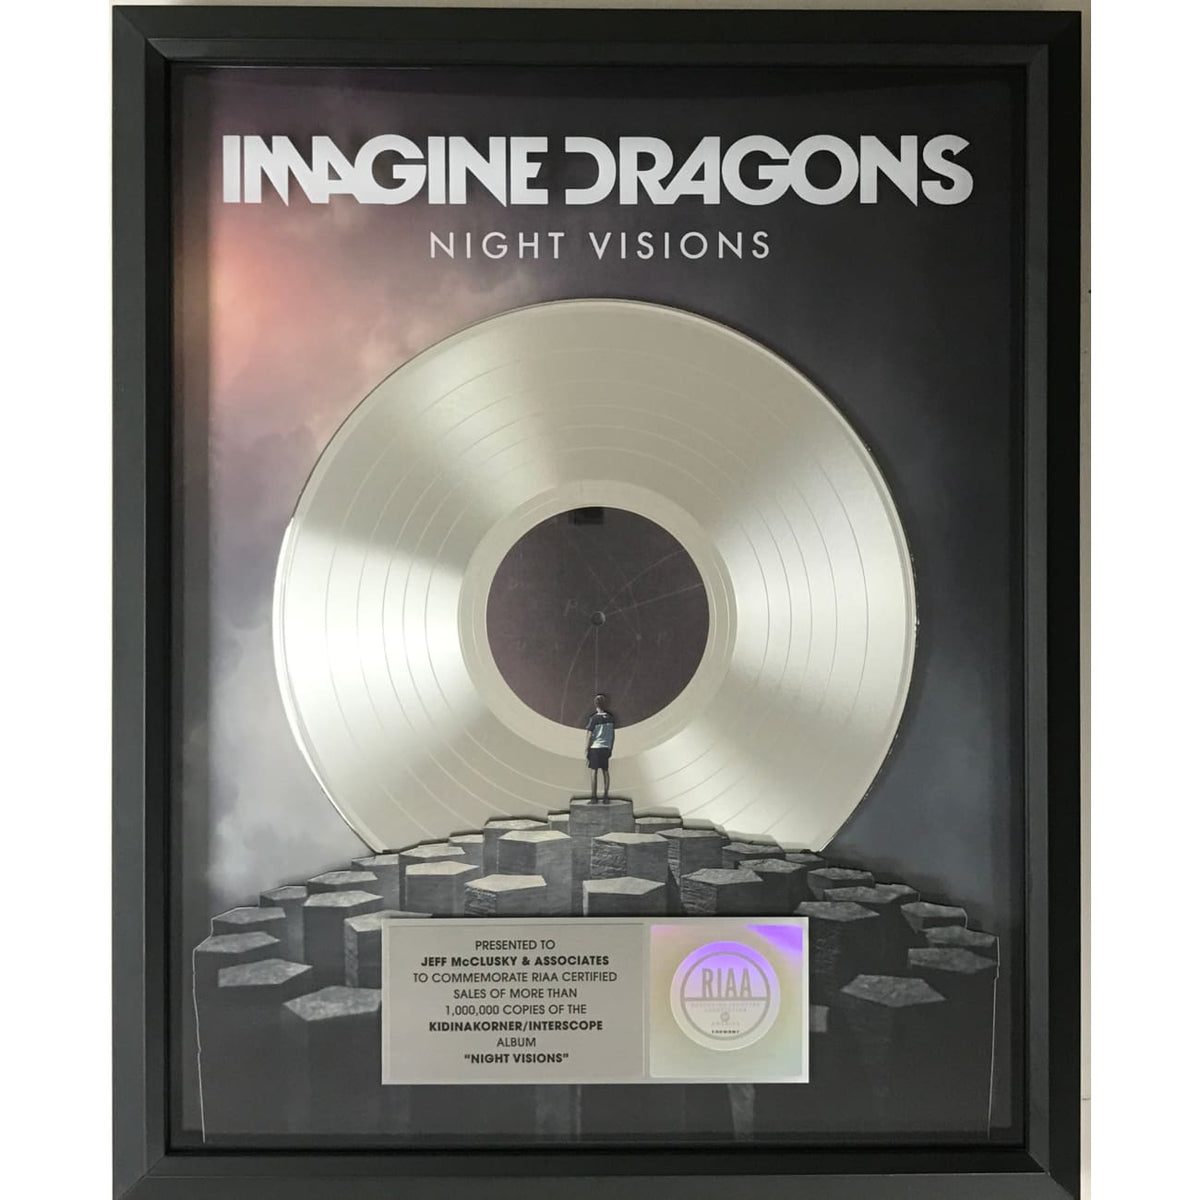  Imagine Dragons Night Visions RIAA Platinum Album Award  –